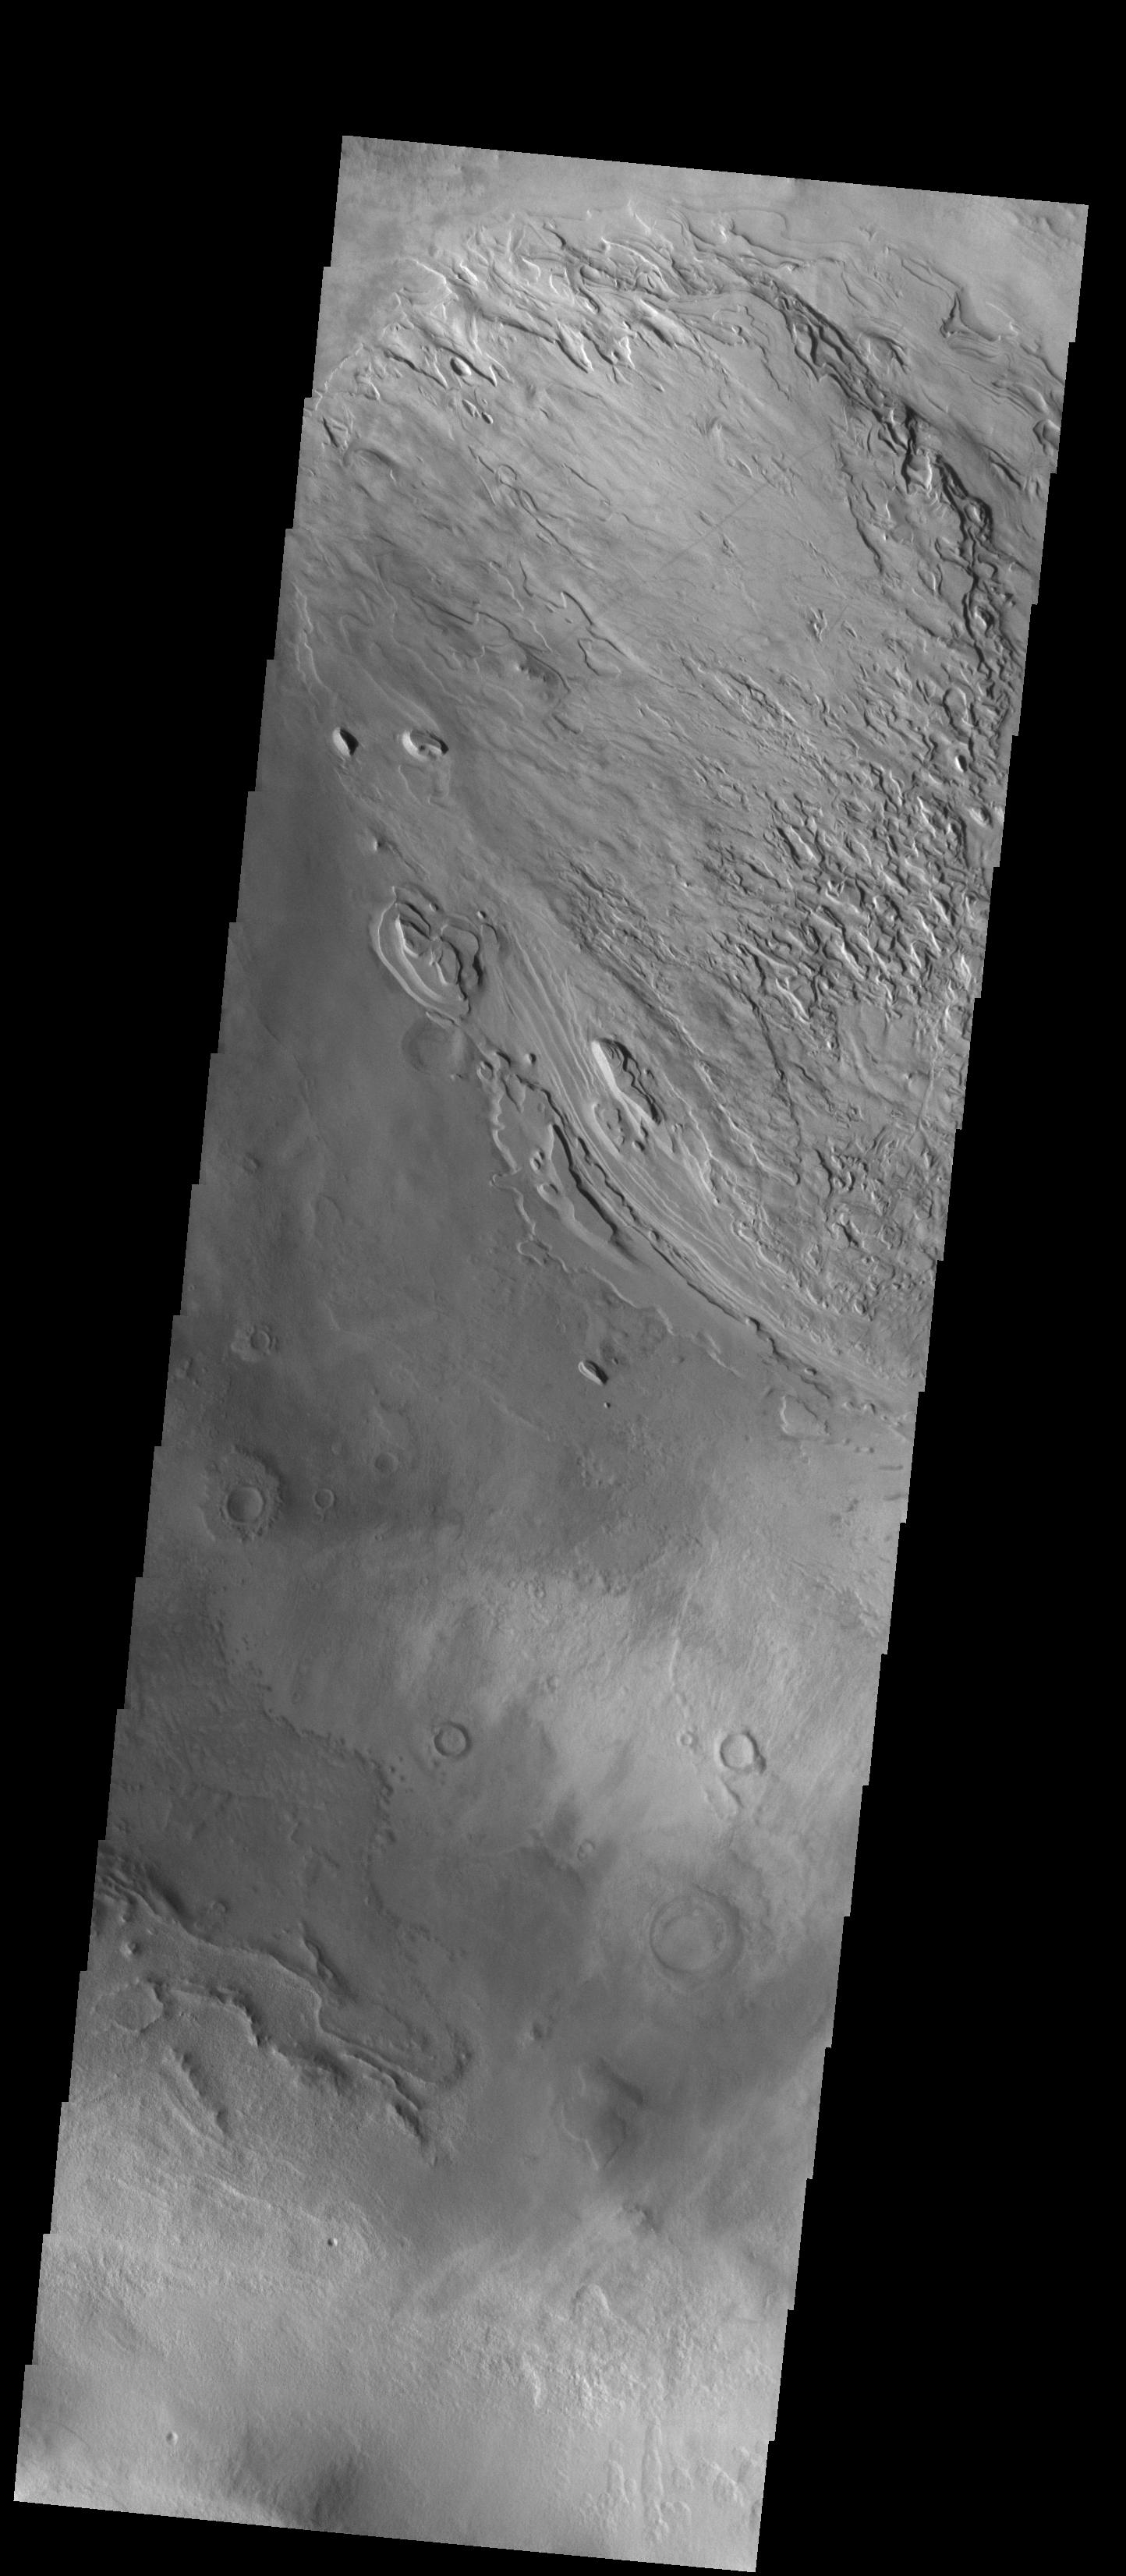 PIA23025: Spallanzani Crater